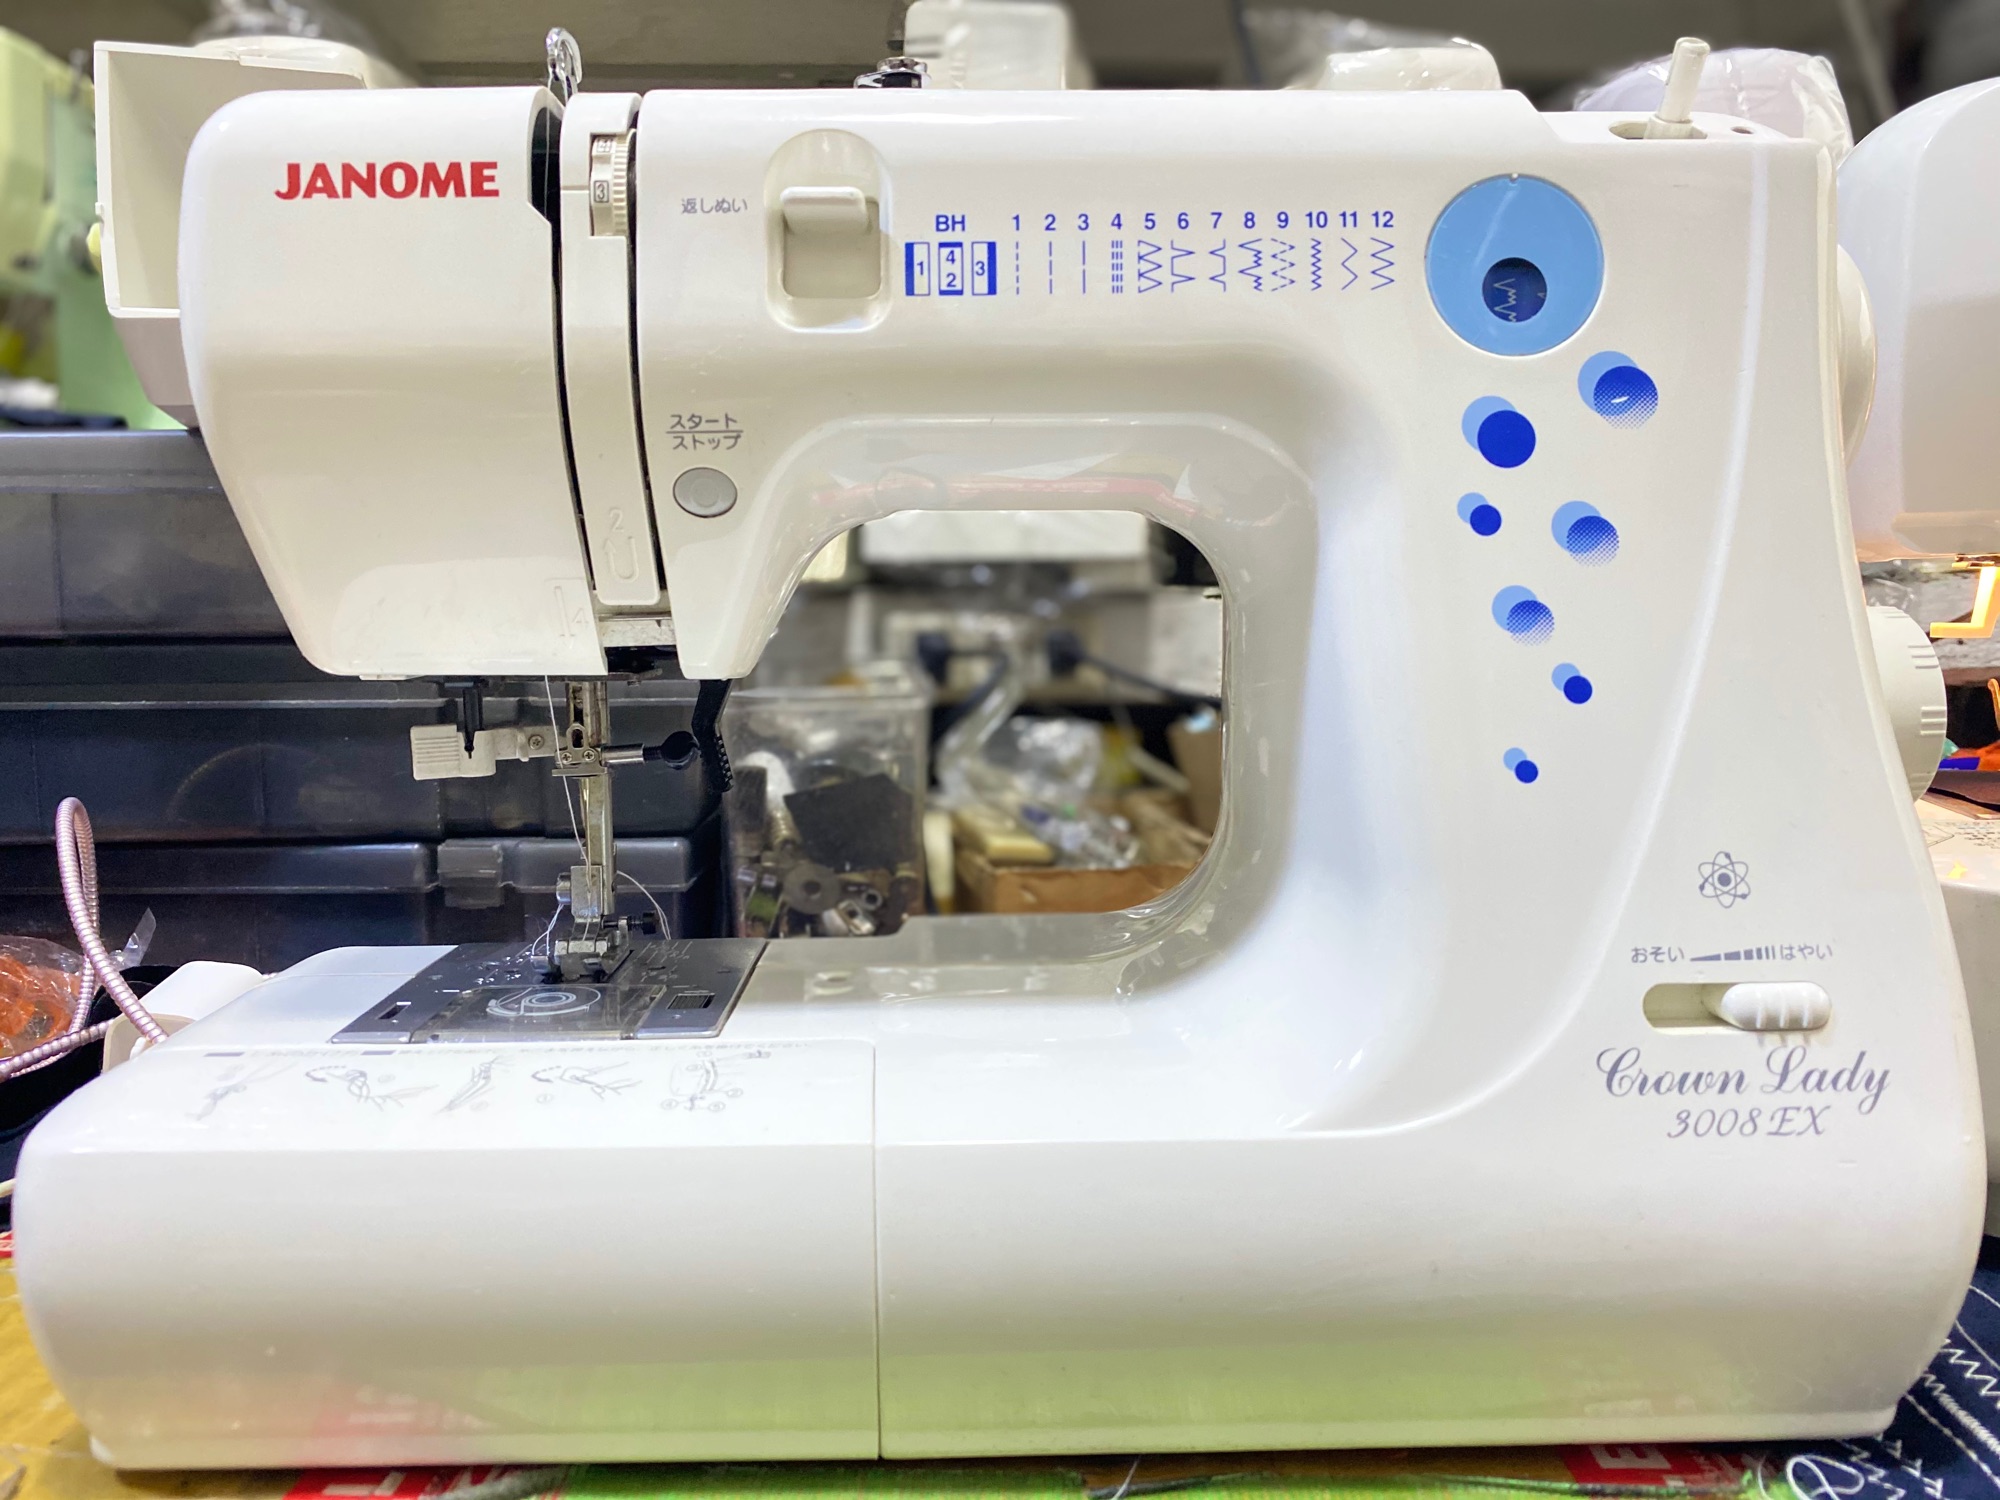 Heavyduty janome sewing machine automatic